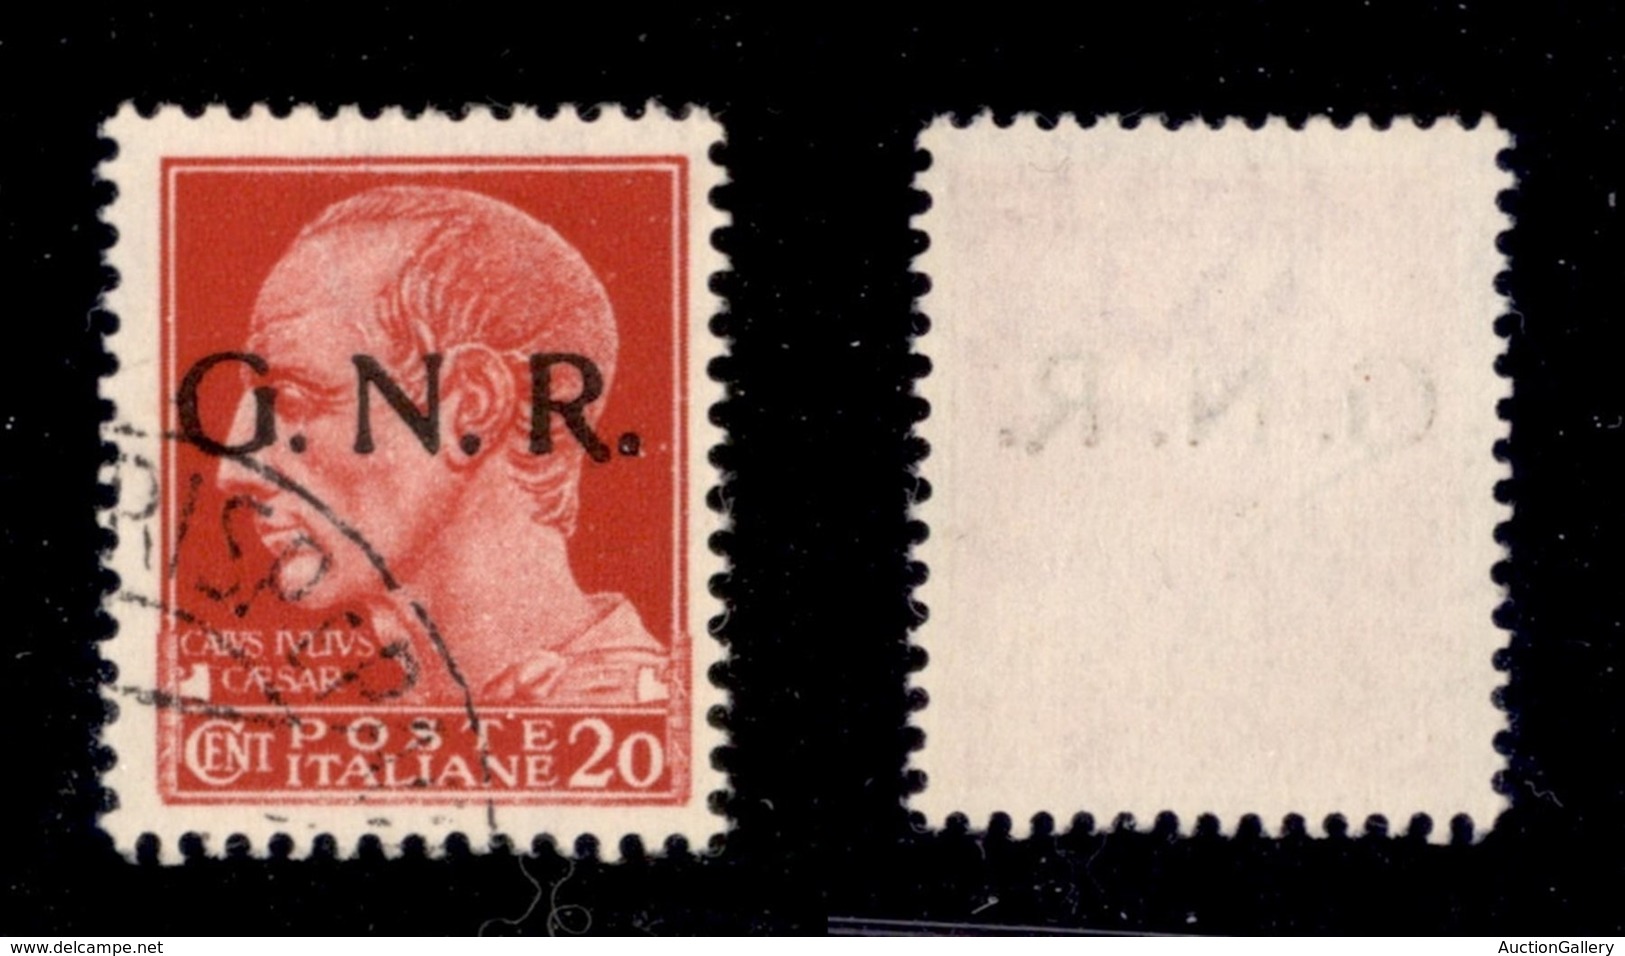 RSI - G.N.R. Verona - 1944 - 20 Cent (473) - Punto Piccolo Dopo G + Punto Grosso Dopo R - Verona (Titolare) - Non Catalo - Other & Unclassified